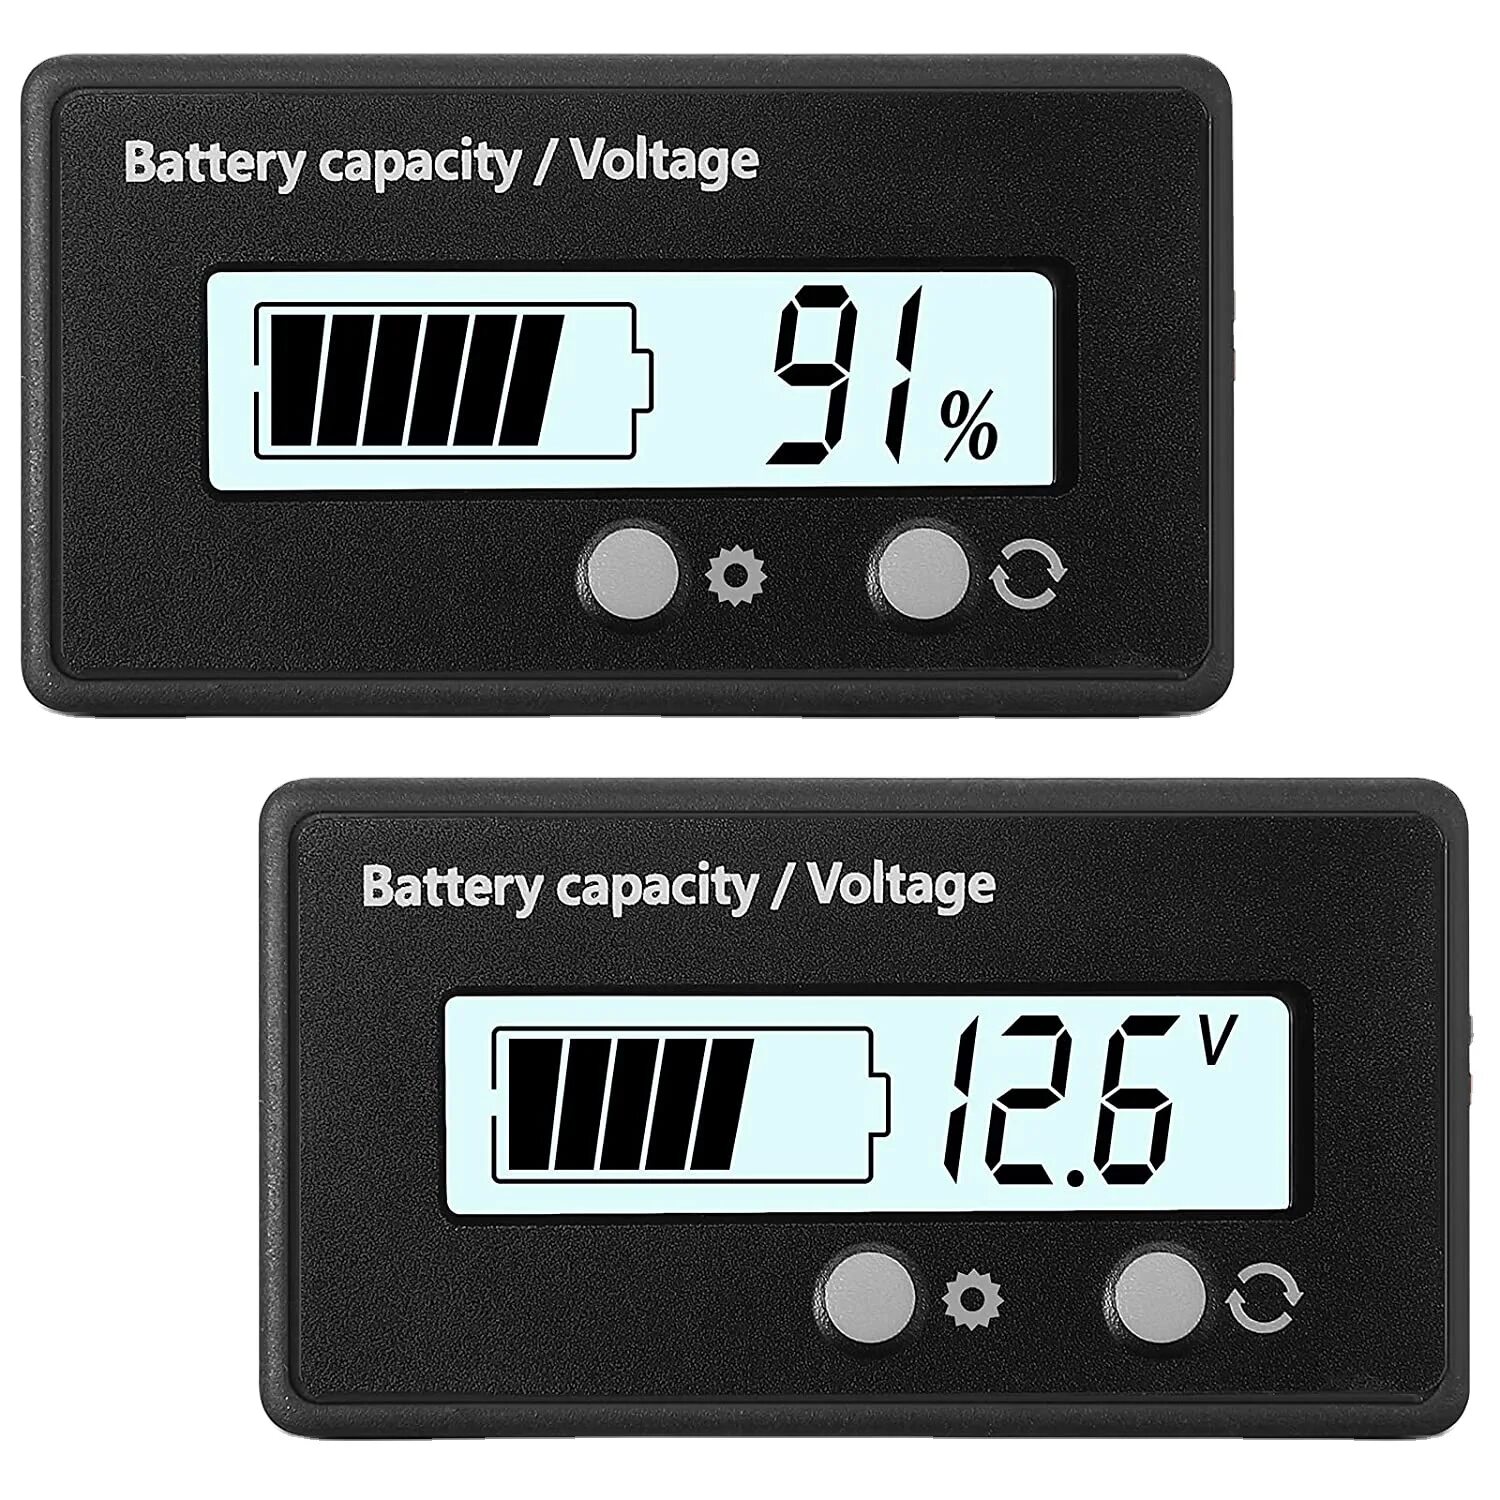 Battery capacity voltage. Battery capacity Voltage к БМС. Battery Meter. Battery capacity indicator как запрограммировать.